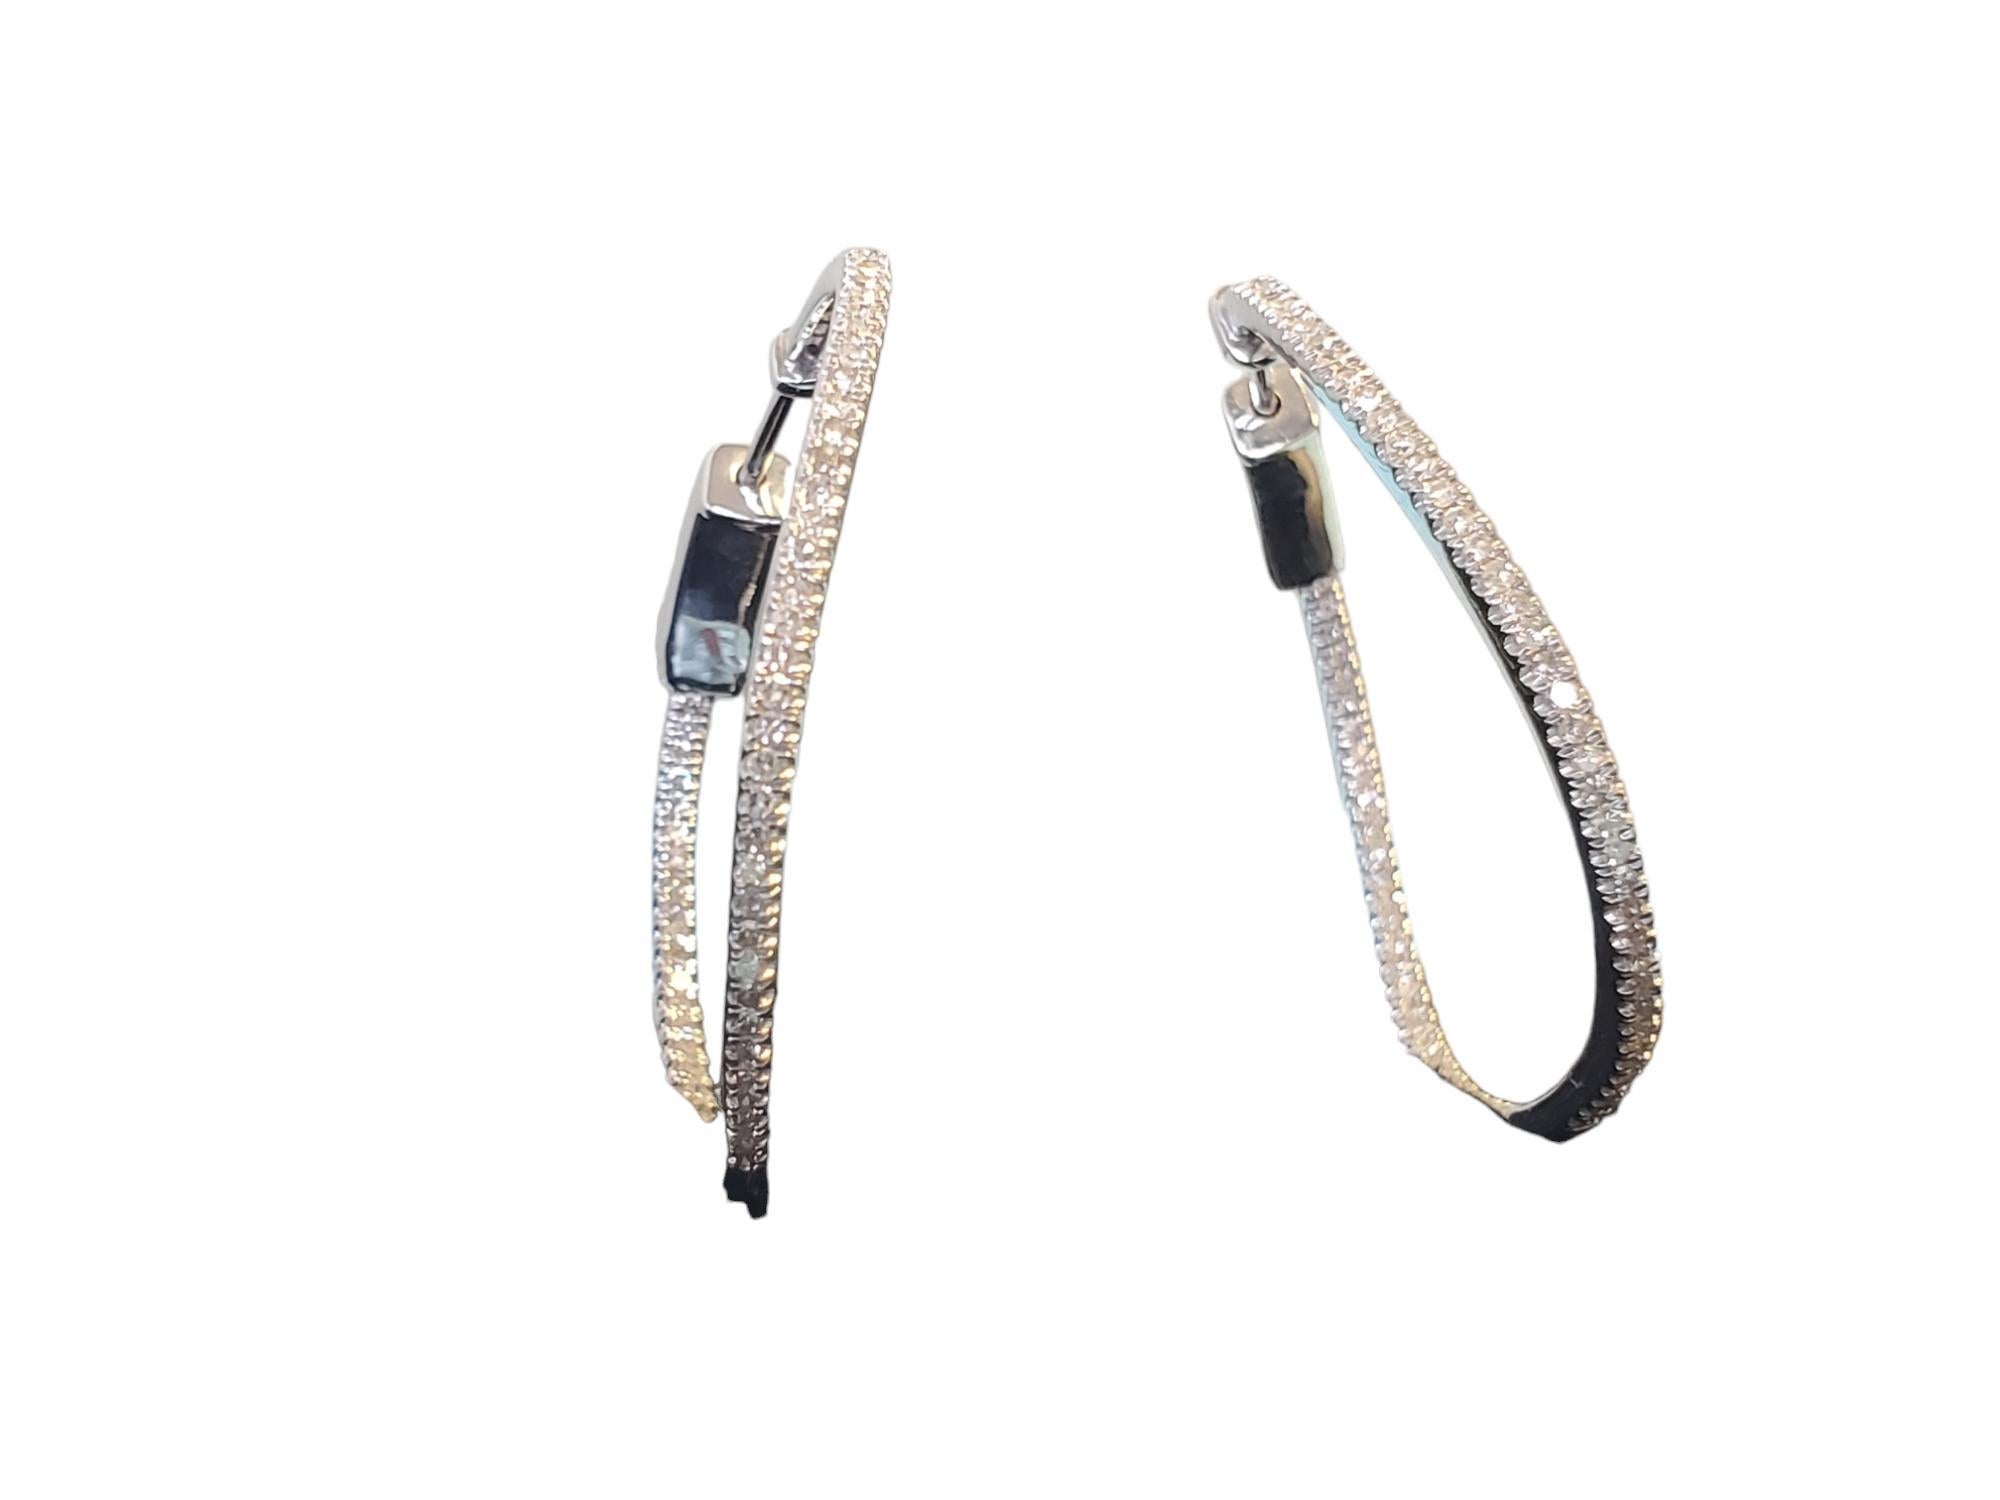 Modern Diamond Hoop Earrings Inside Out 10k White Gold 1.00tcw 1.5